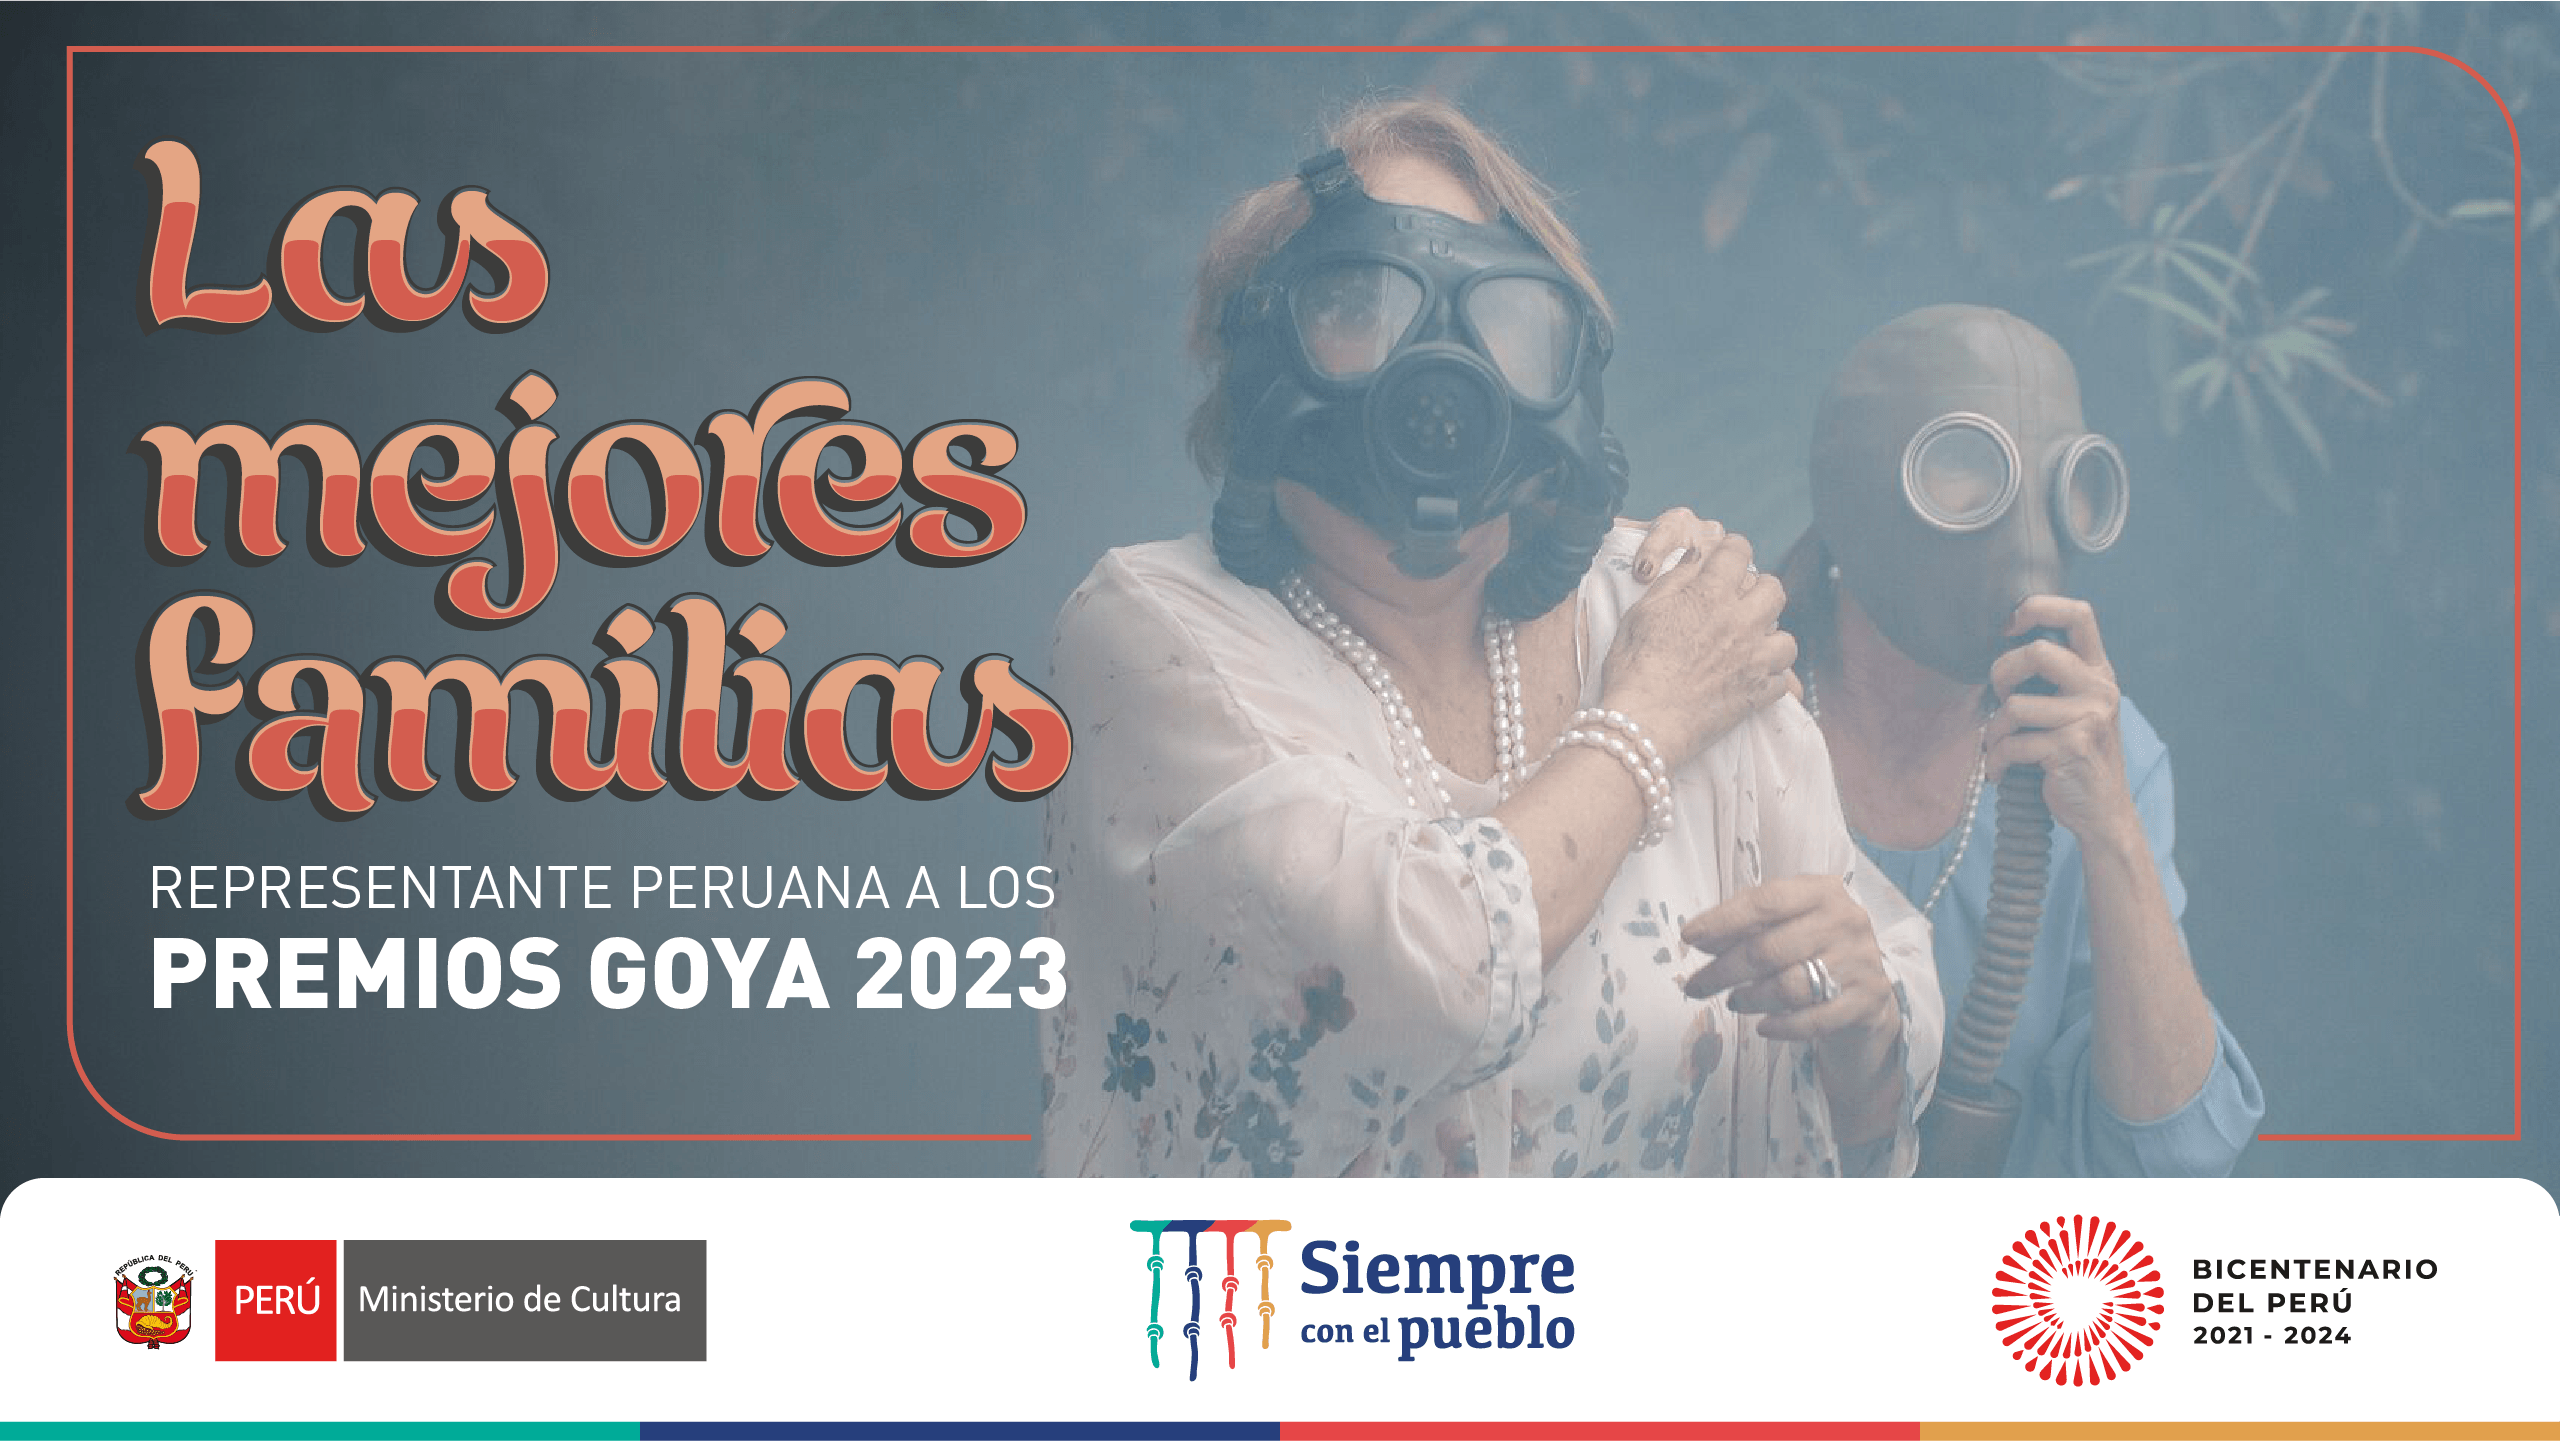 Las mejores familias - Goya 2023